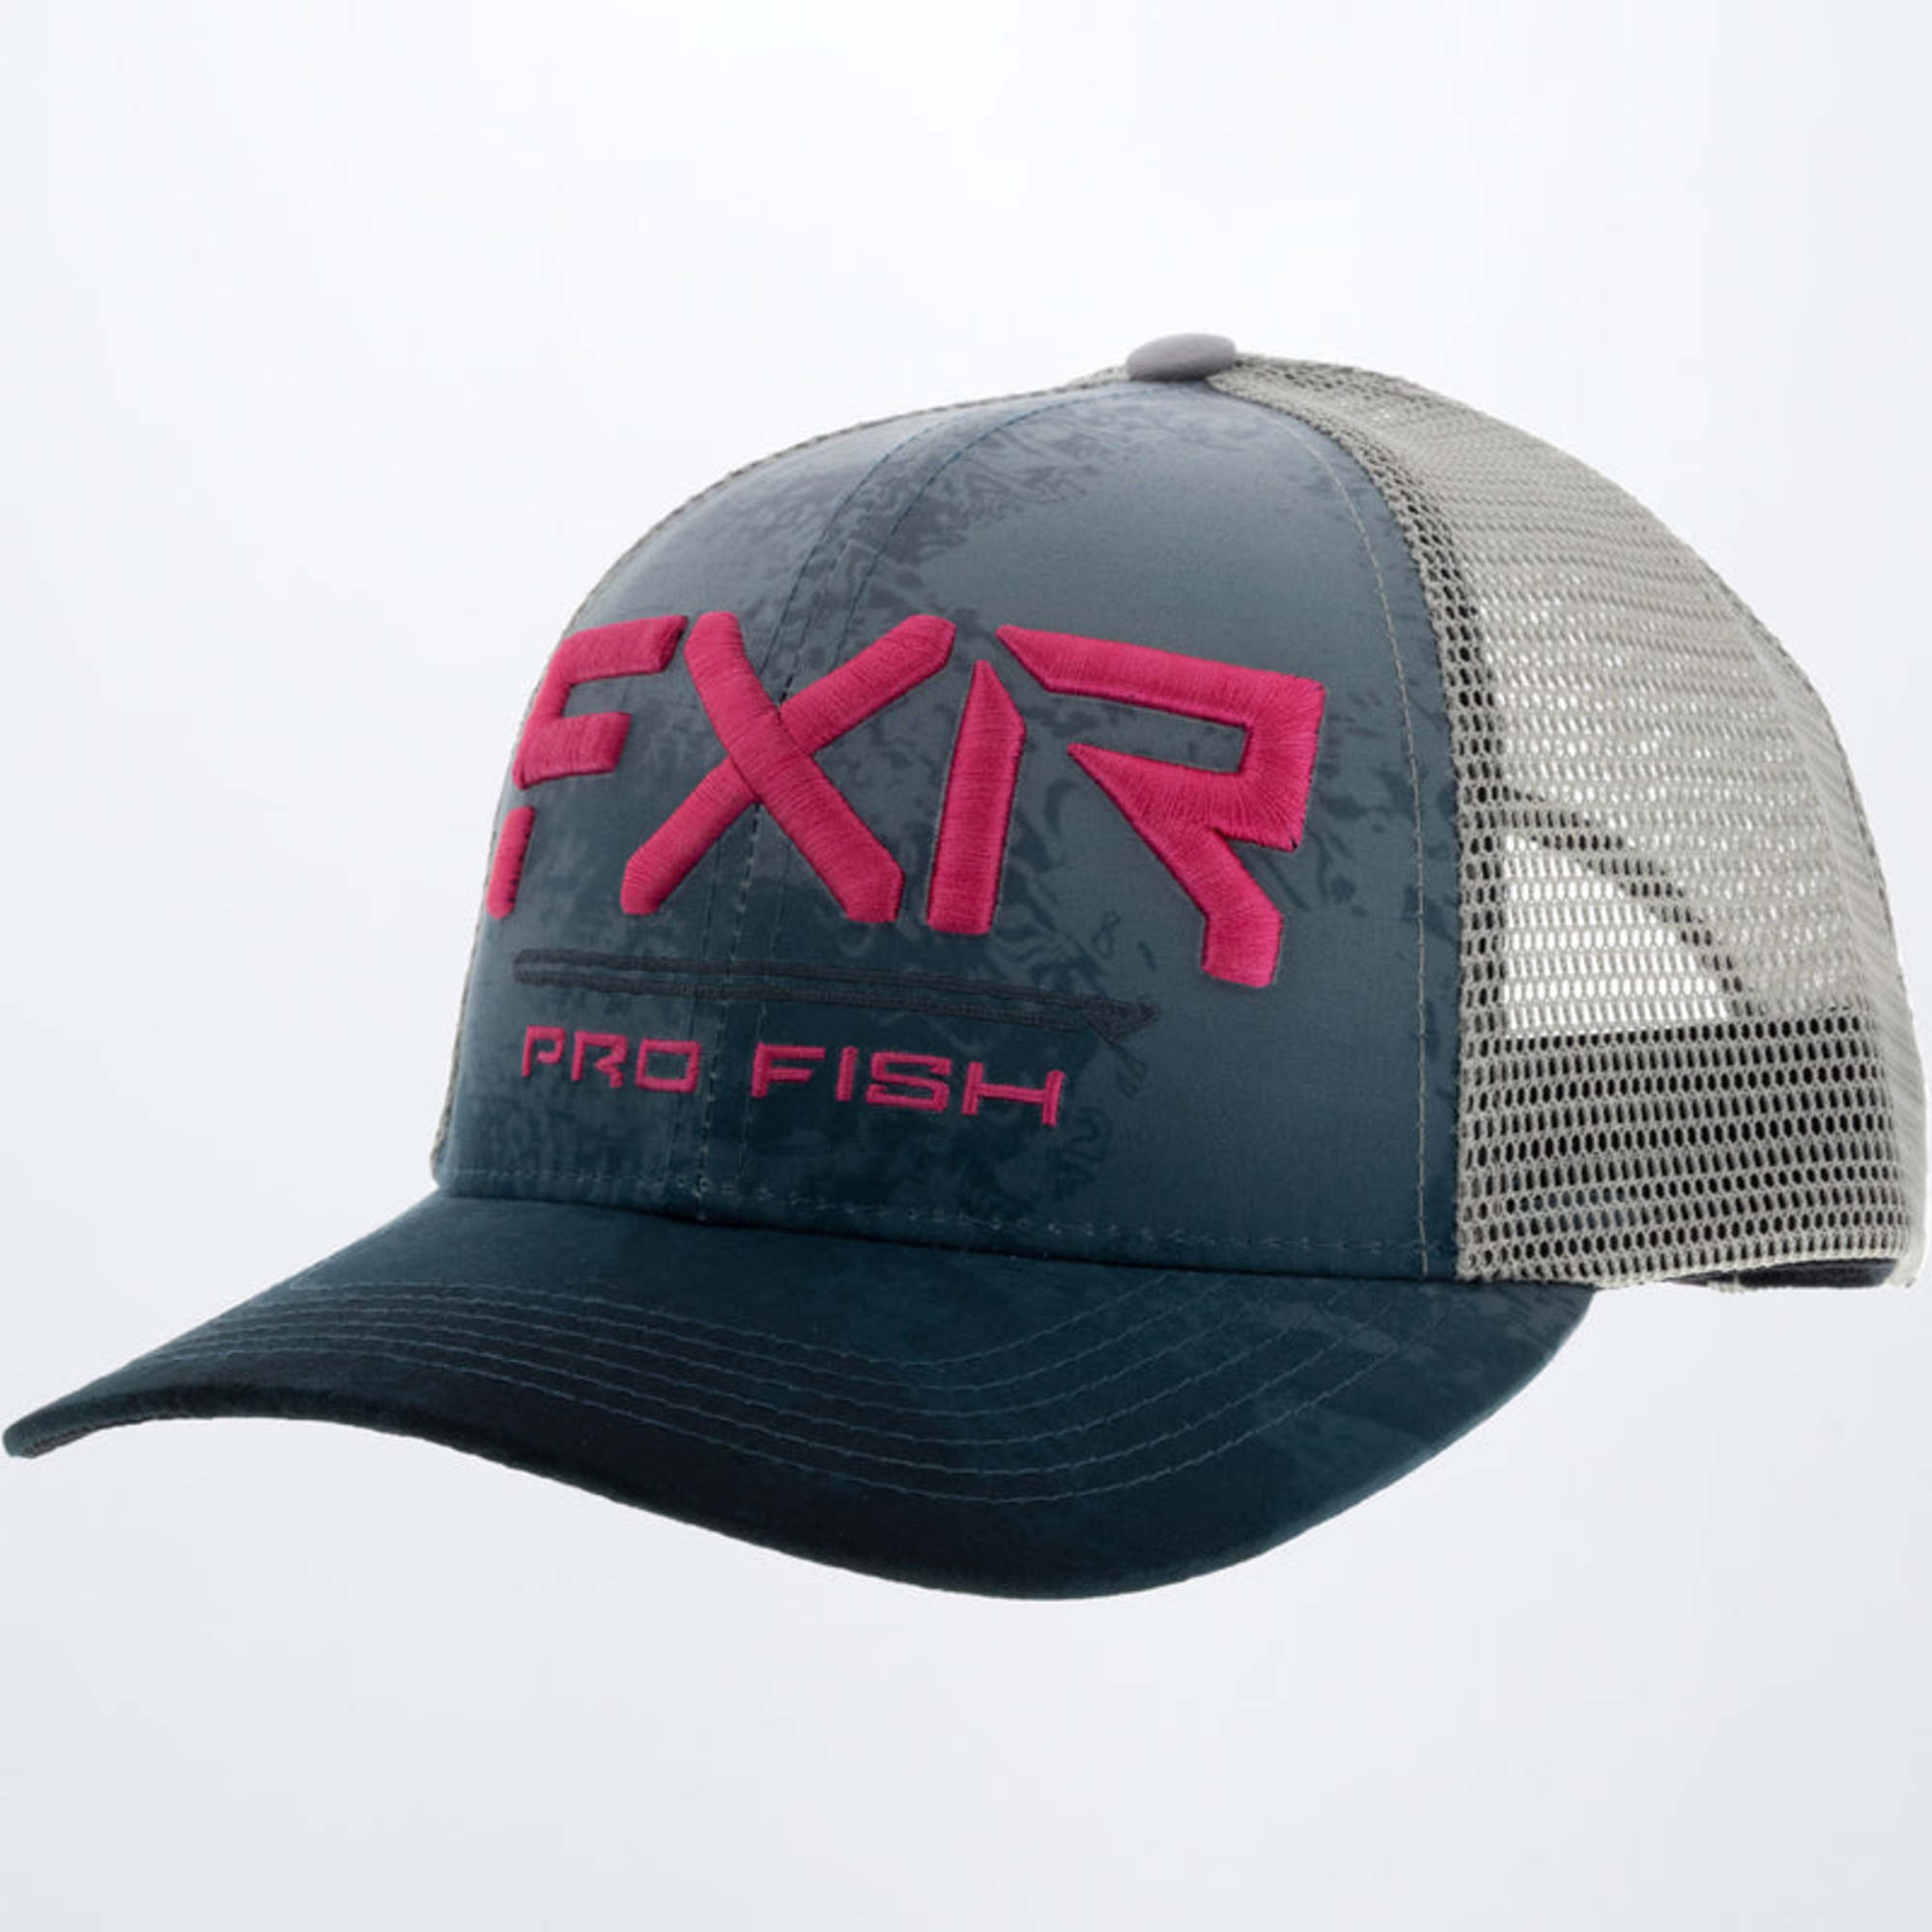 fxr racing flexfit hats adult pro fish